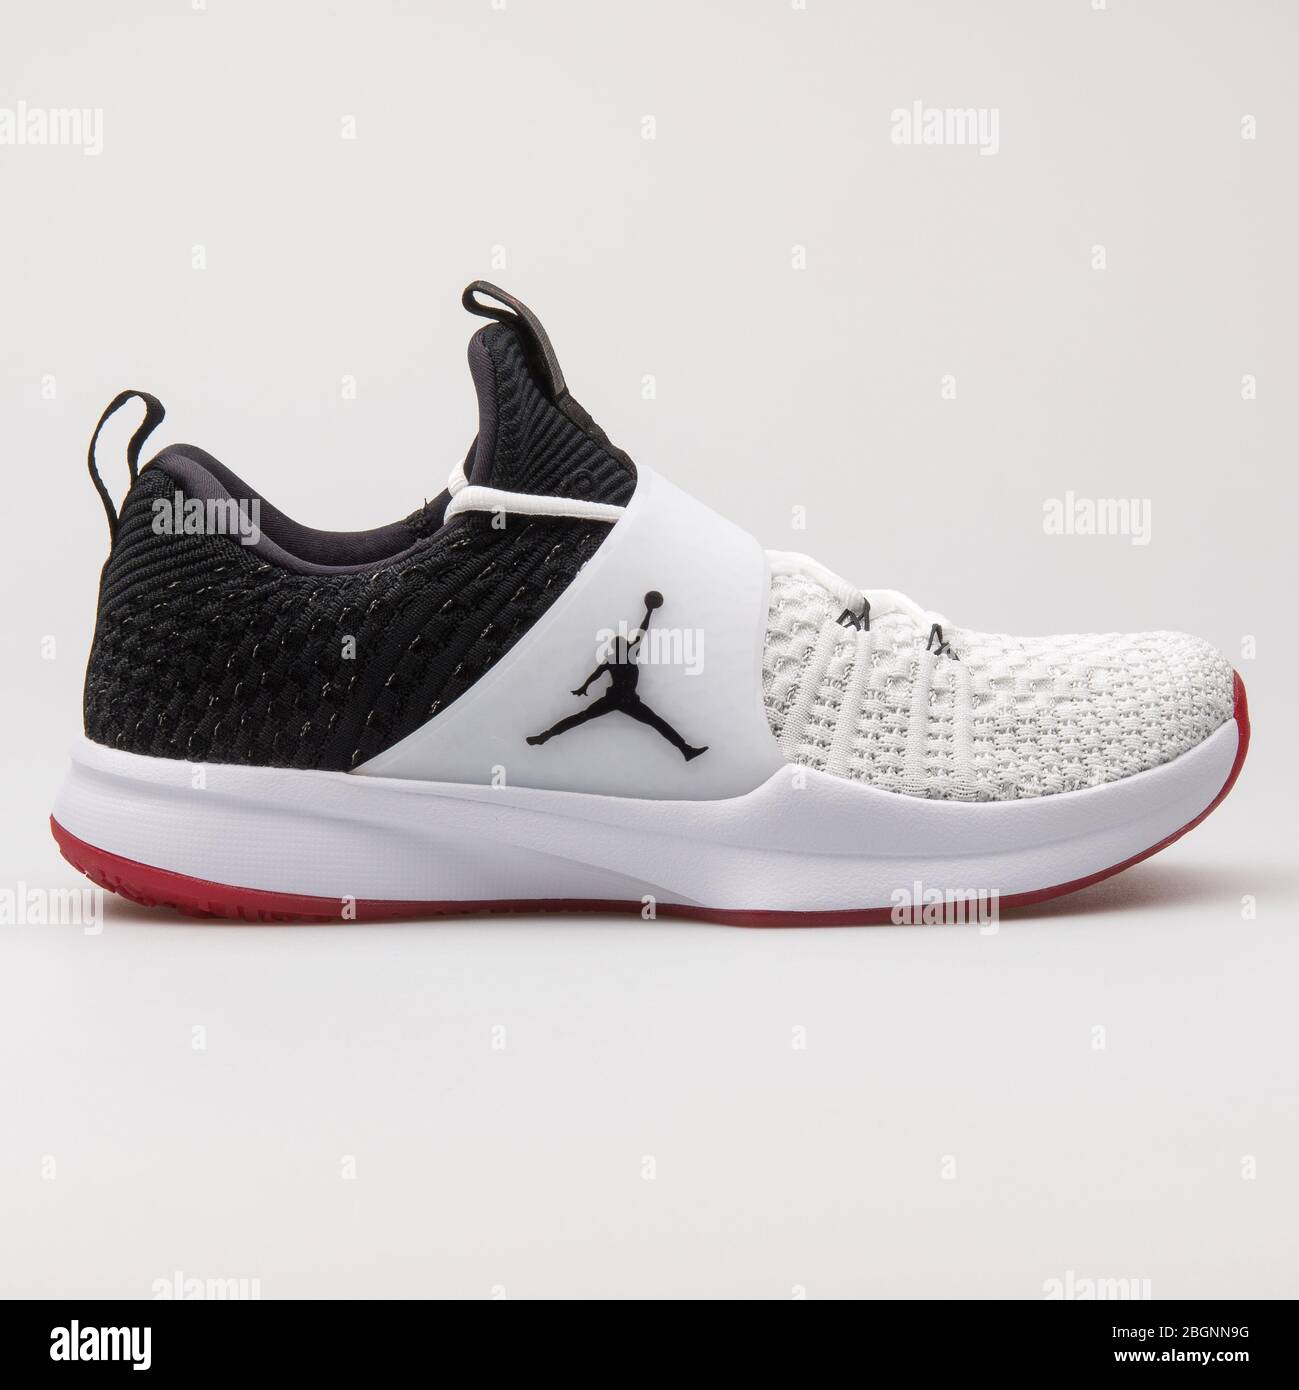 VIENNE, AUTRICHE - 16 AOÛT 2017 : sneaker Nike Air Jordan Trainer 2 Flyknit  noire et blanche sur fond blanc Photo Stock - Alamy